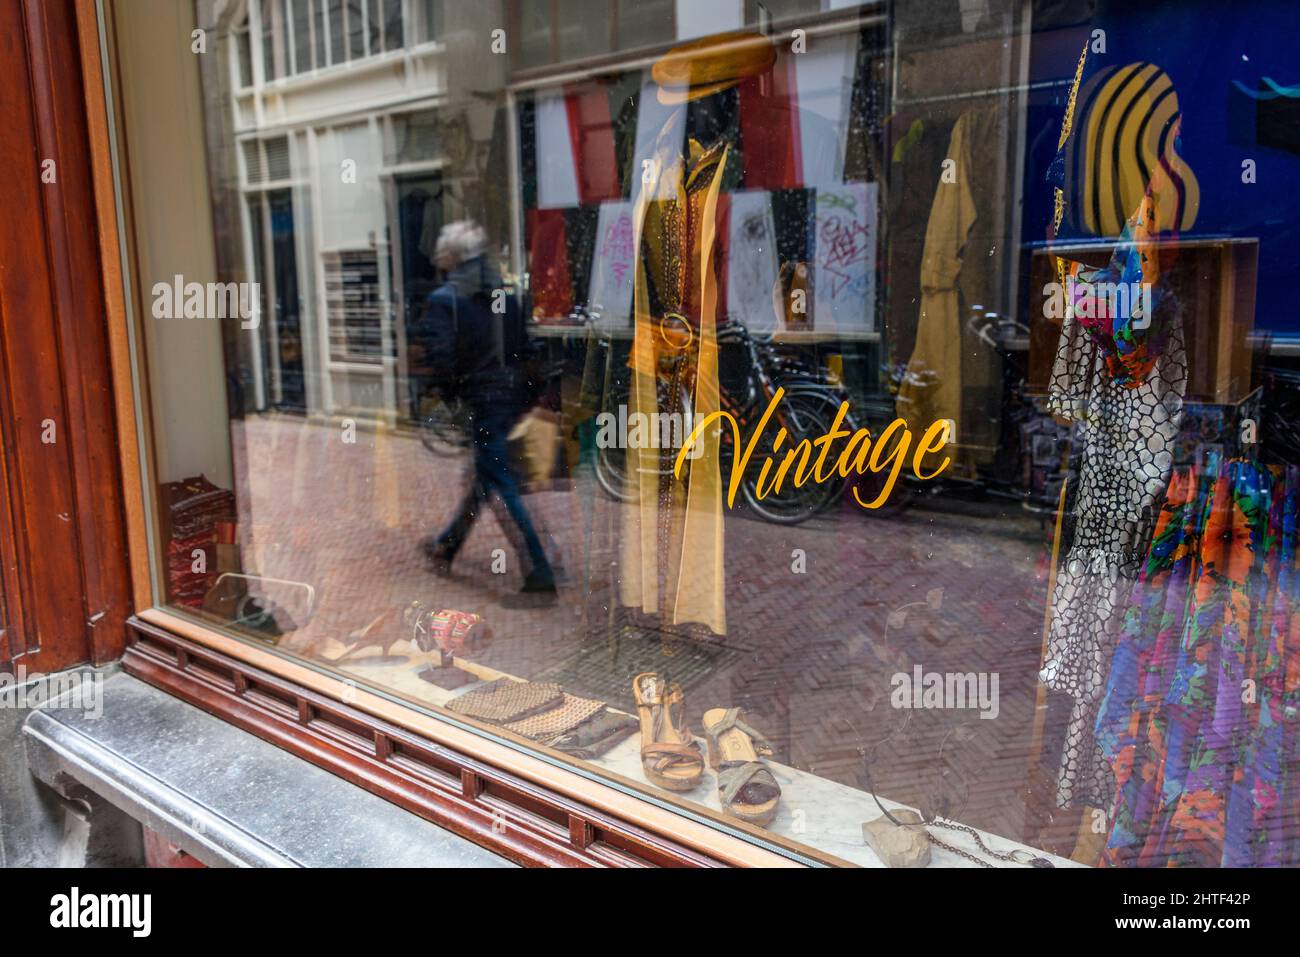 Vetrine Amsterdam Immagini e Fotos Stock - Alamy